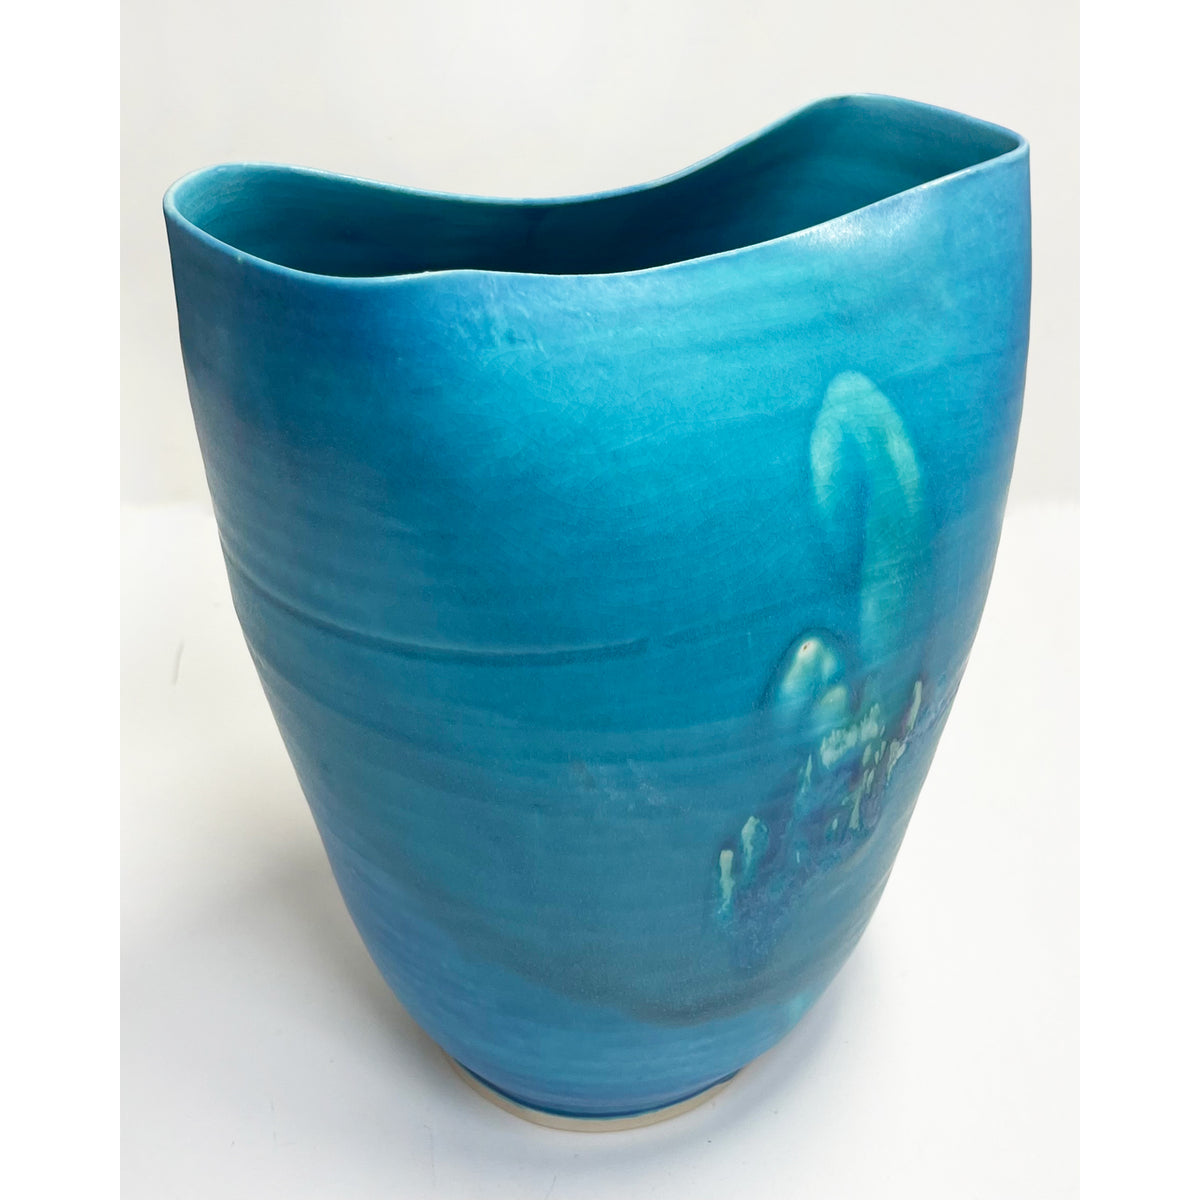 Kayo O'Young - Large Crimp Turquoise Vase, 10" x 8.5" x 5.5"